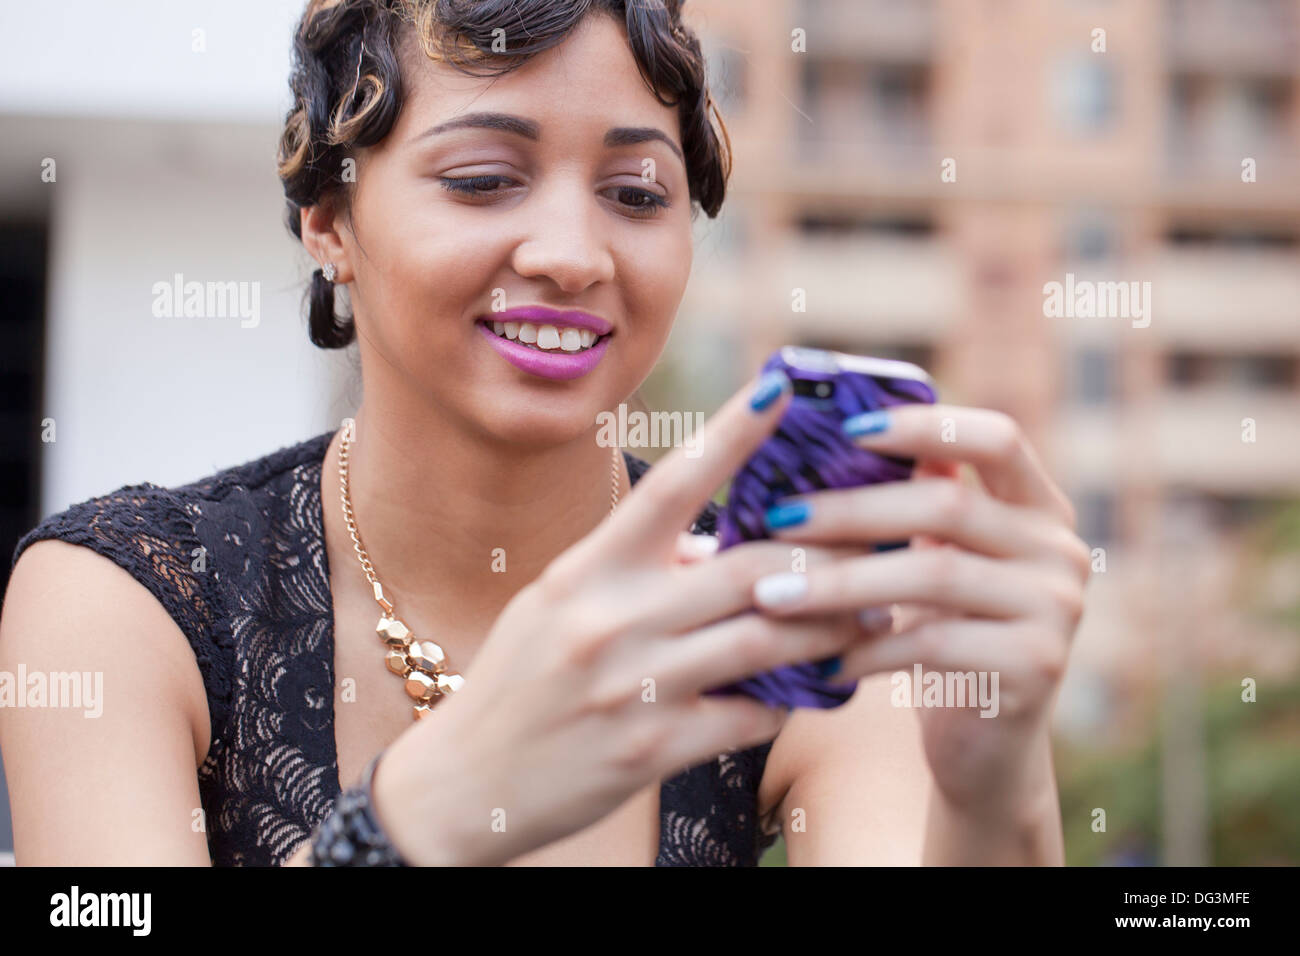 Woman using smart phone - USA Stock Photo